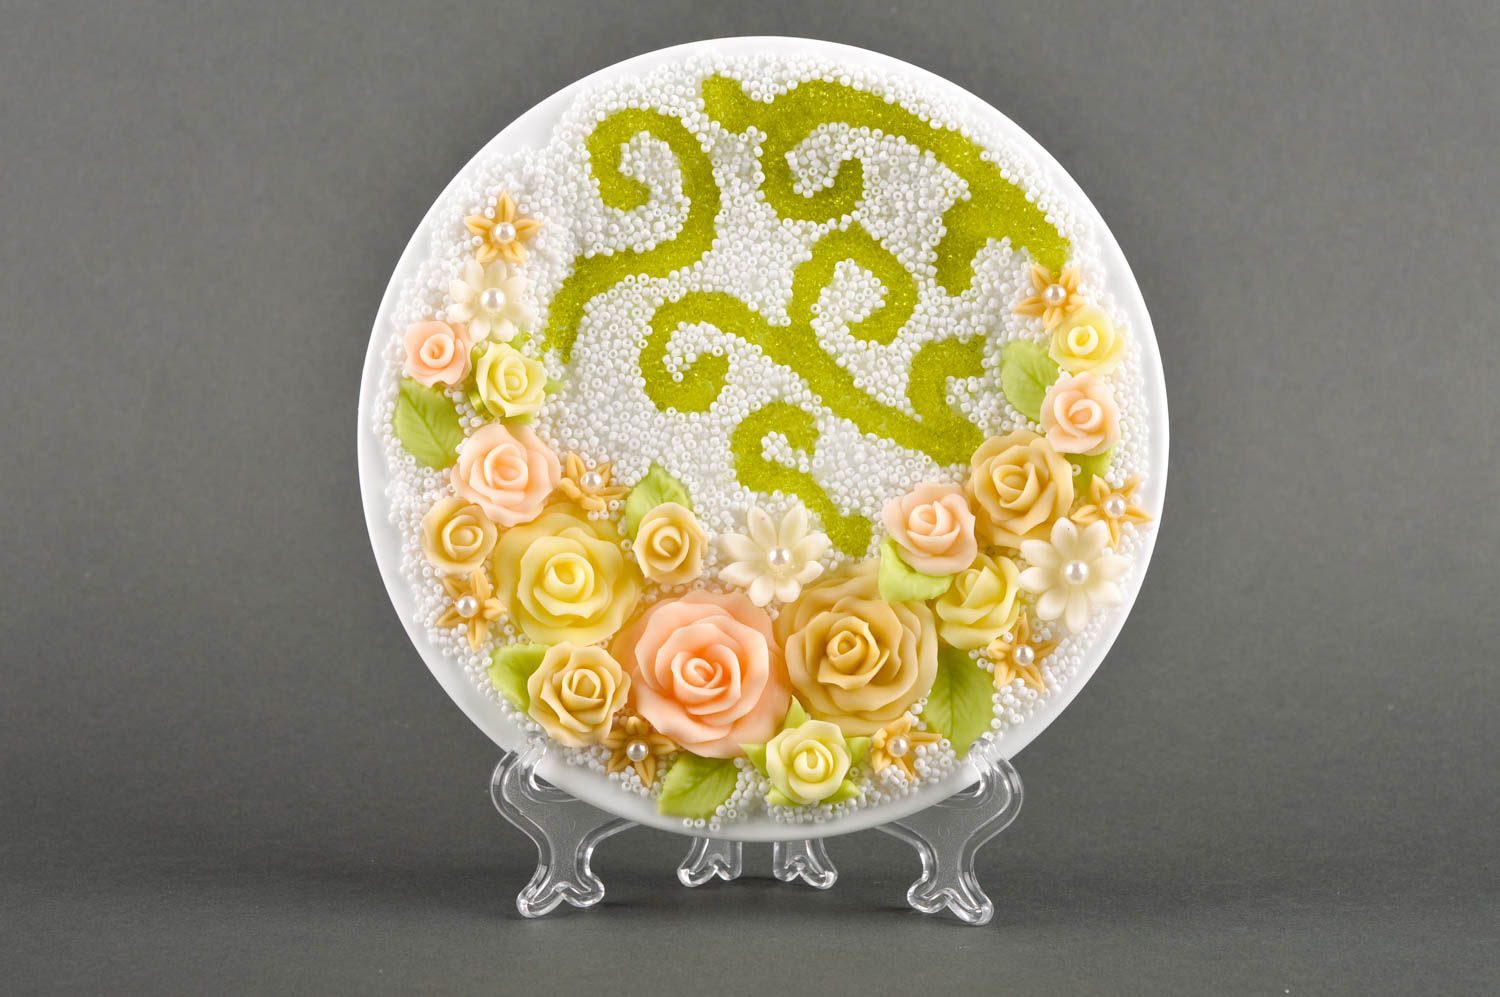 Свадебная тарелка хэнд мэйд посуда на свадьбу красивая посуда авторская тарелка фото 1